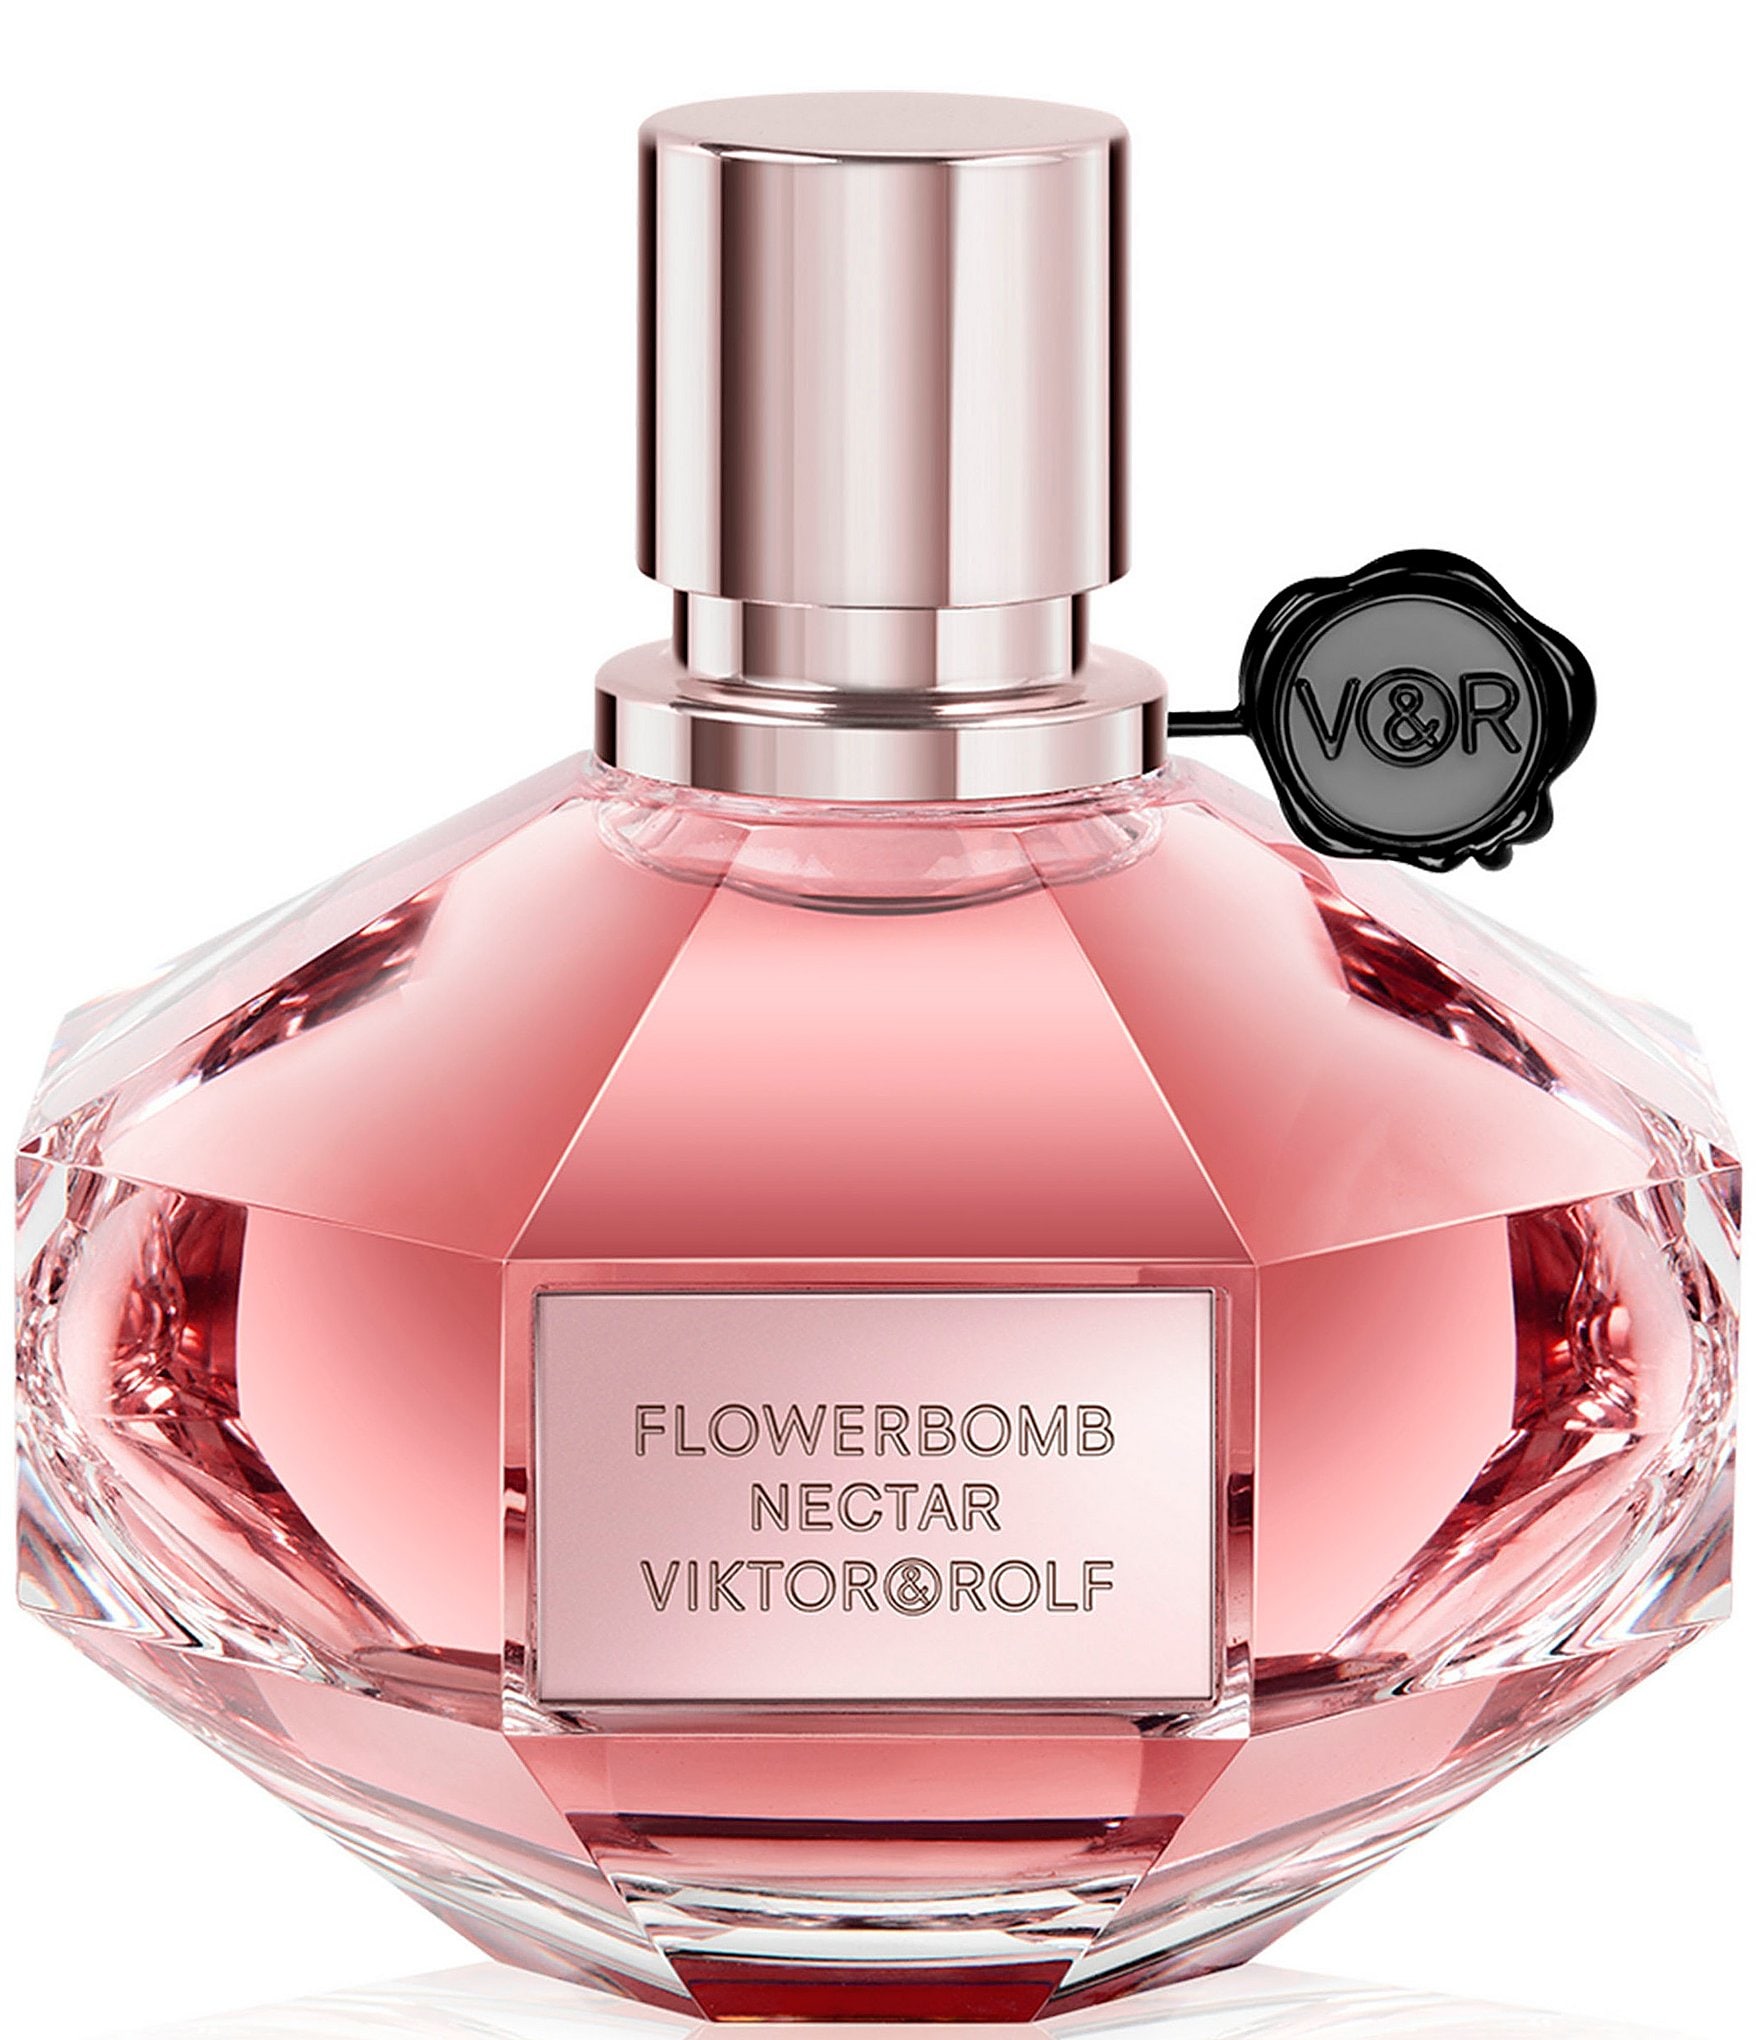 Viktor & Rolf Flowerbomb Nectar Eau de Parfum Intense ...